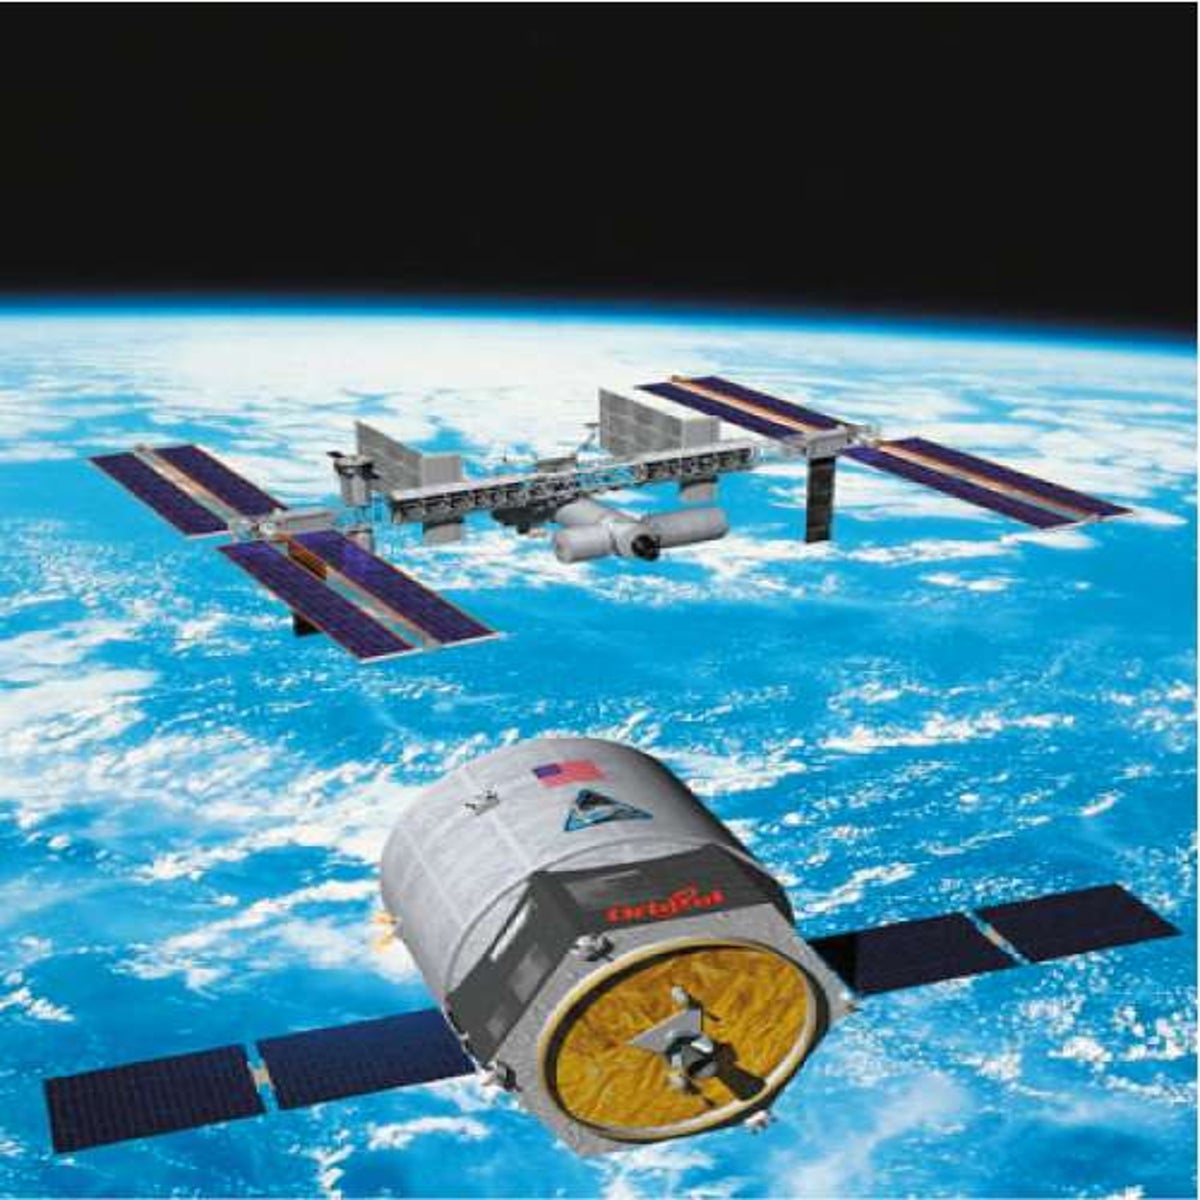 nasa concept spacecraft escape pods